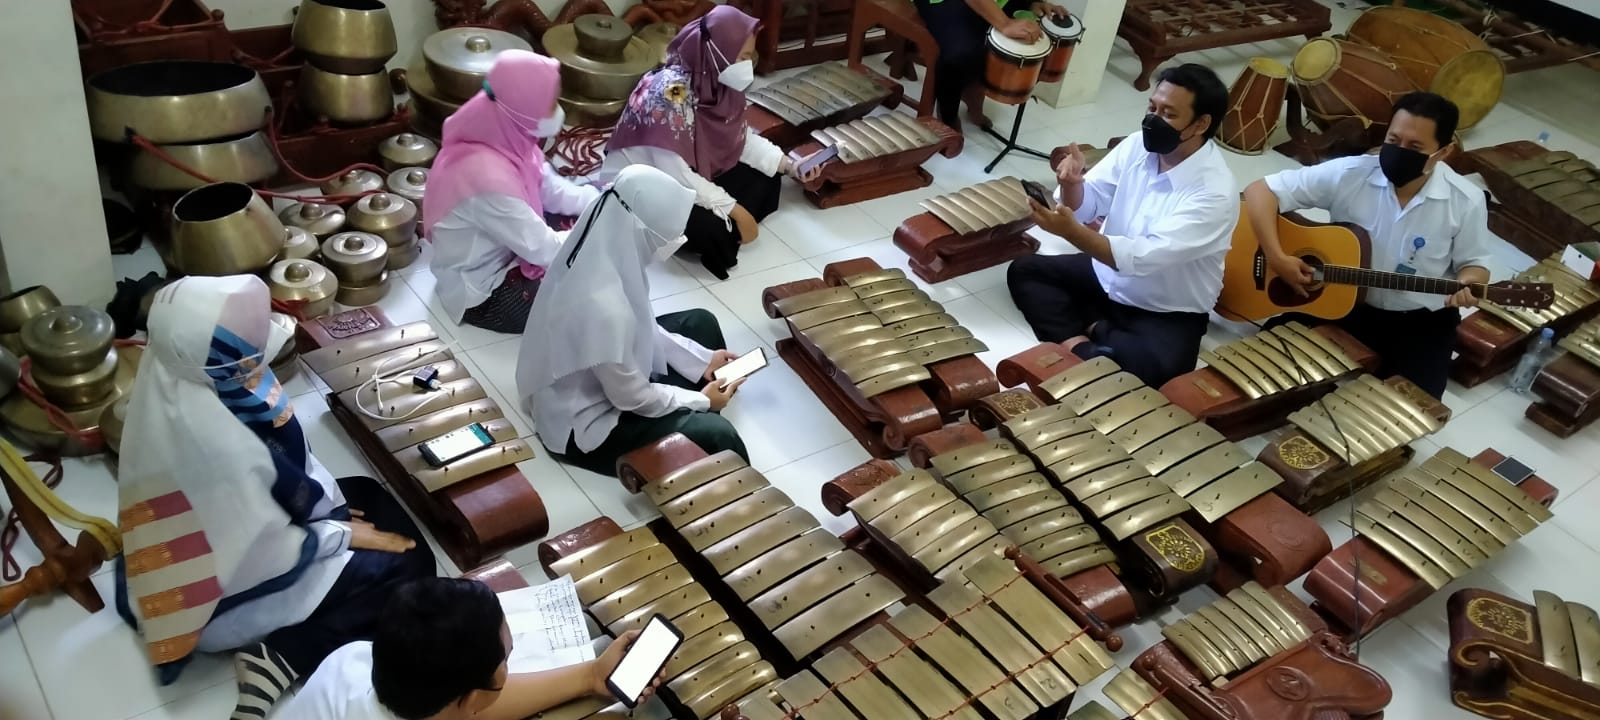 Jelang Agustusan, SD Muhammadiyah 1 Ketelan Kampanyekan Covid-19 Melalui Musik